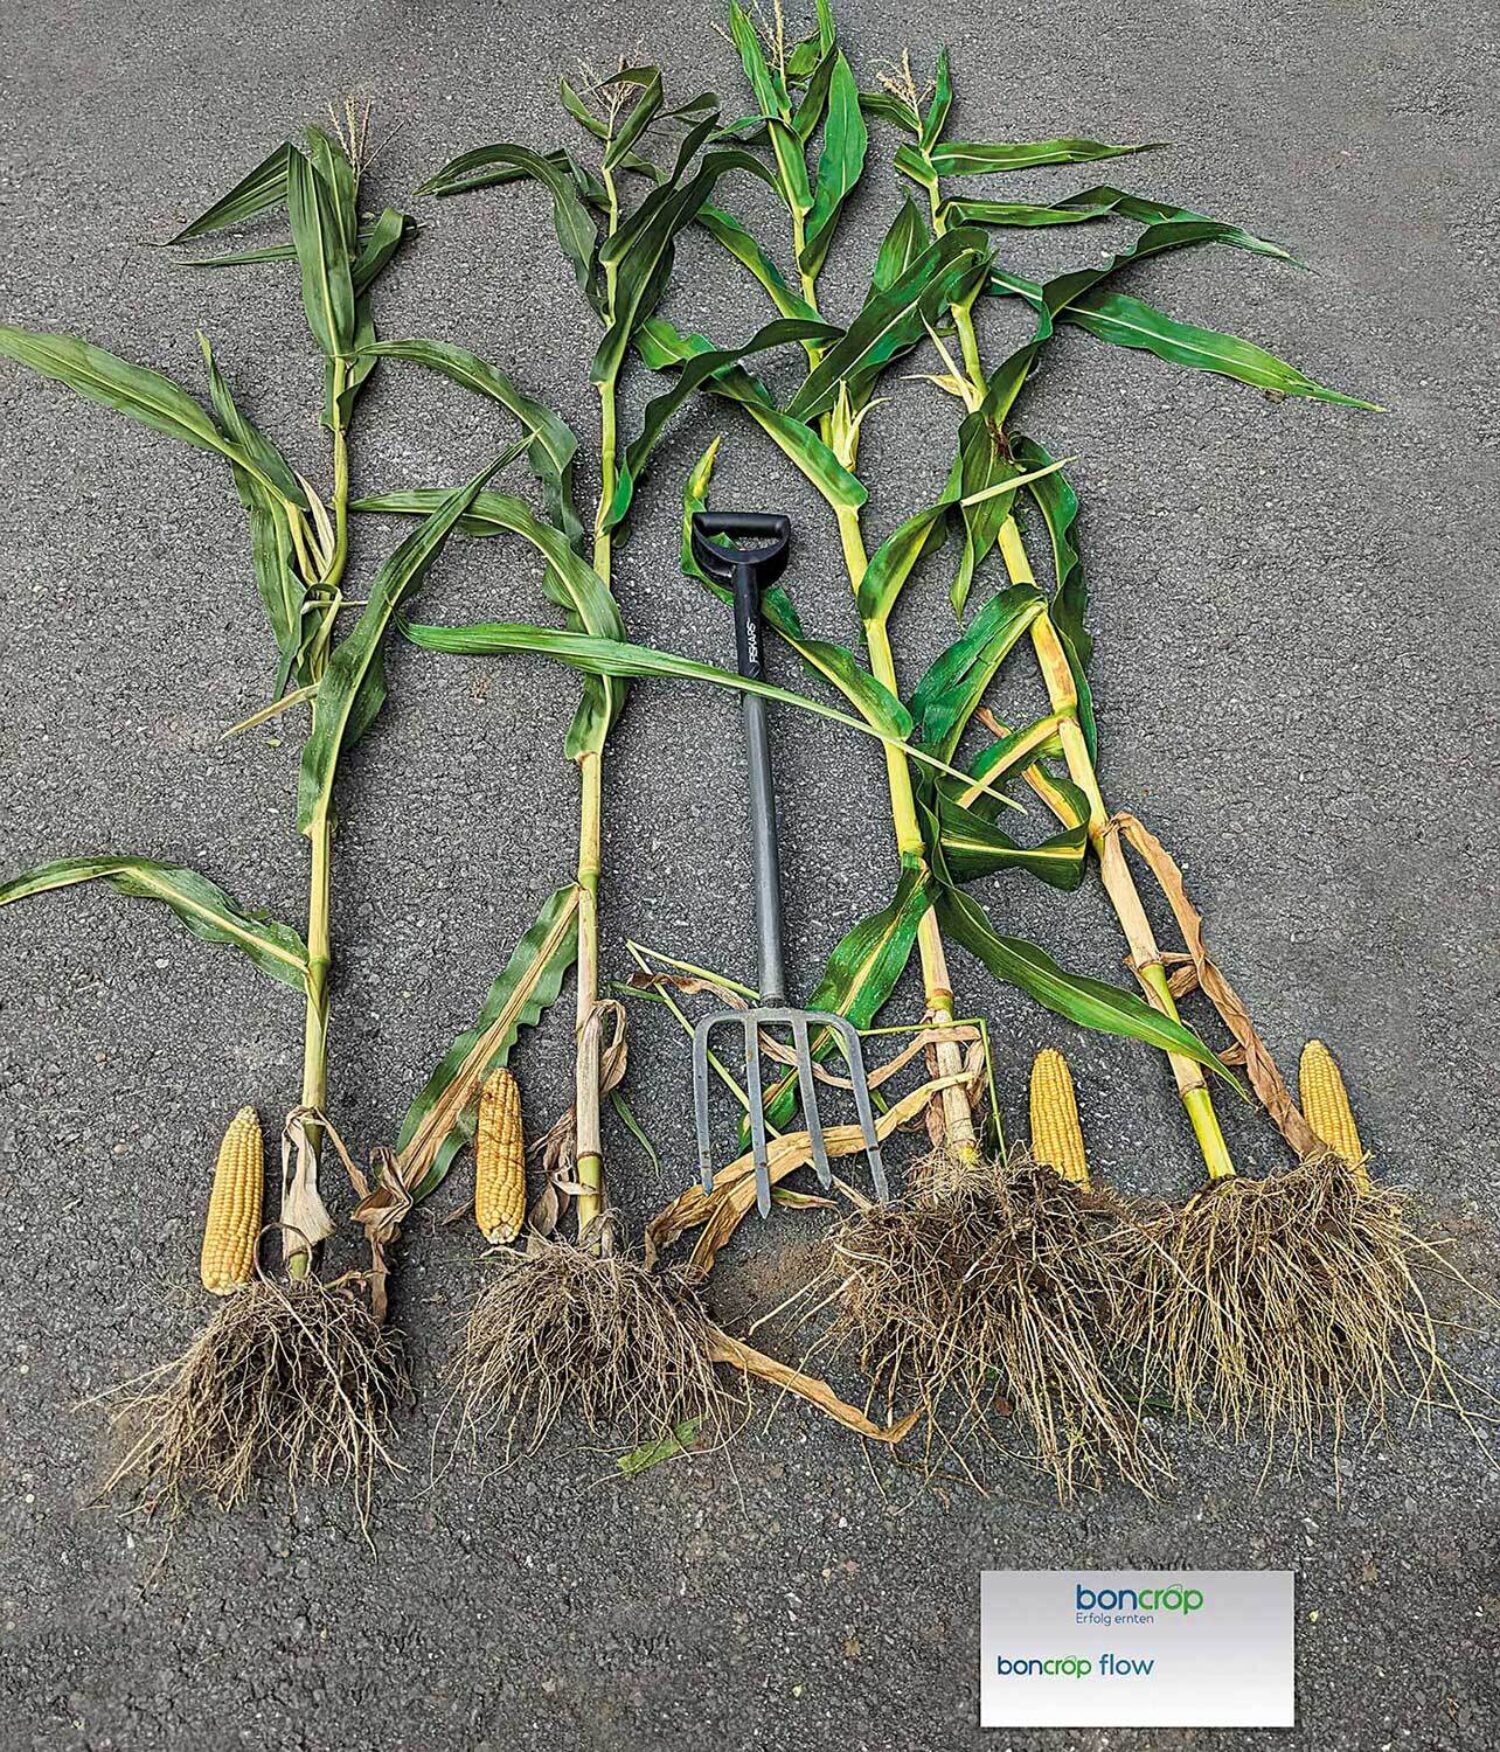 Impression aus den boncrop flow Praxisdemos 2023 - Maispflanzen im Vergleich